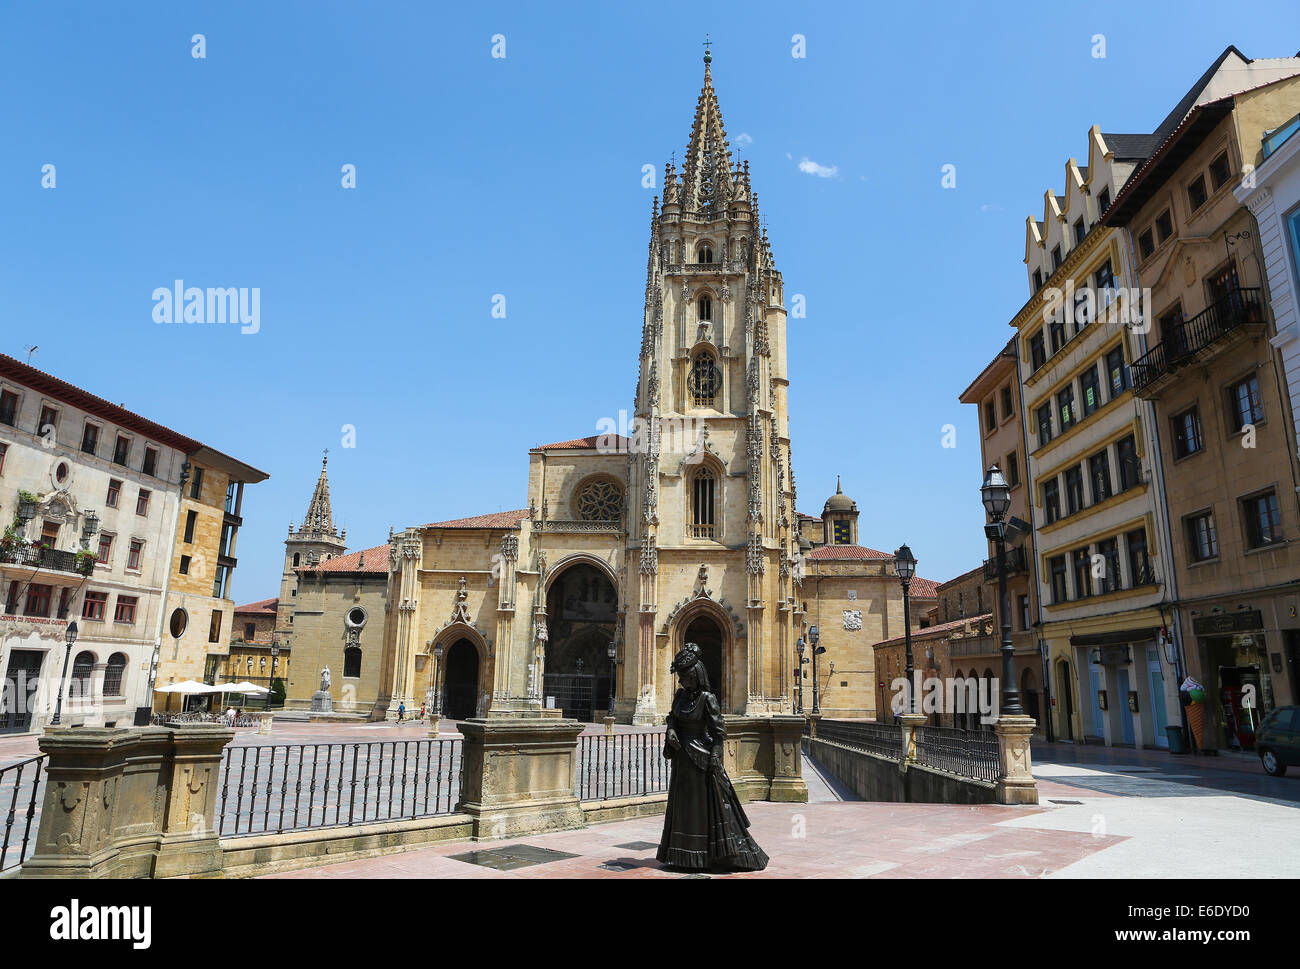 OVIEDO, Spagna - 17 luglio 2014: Statua di La Regenta di fronte alla Cattedrale di San Salvador in Oviedo, capitale delle Asturie, S Foto Stock